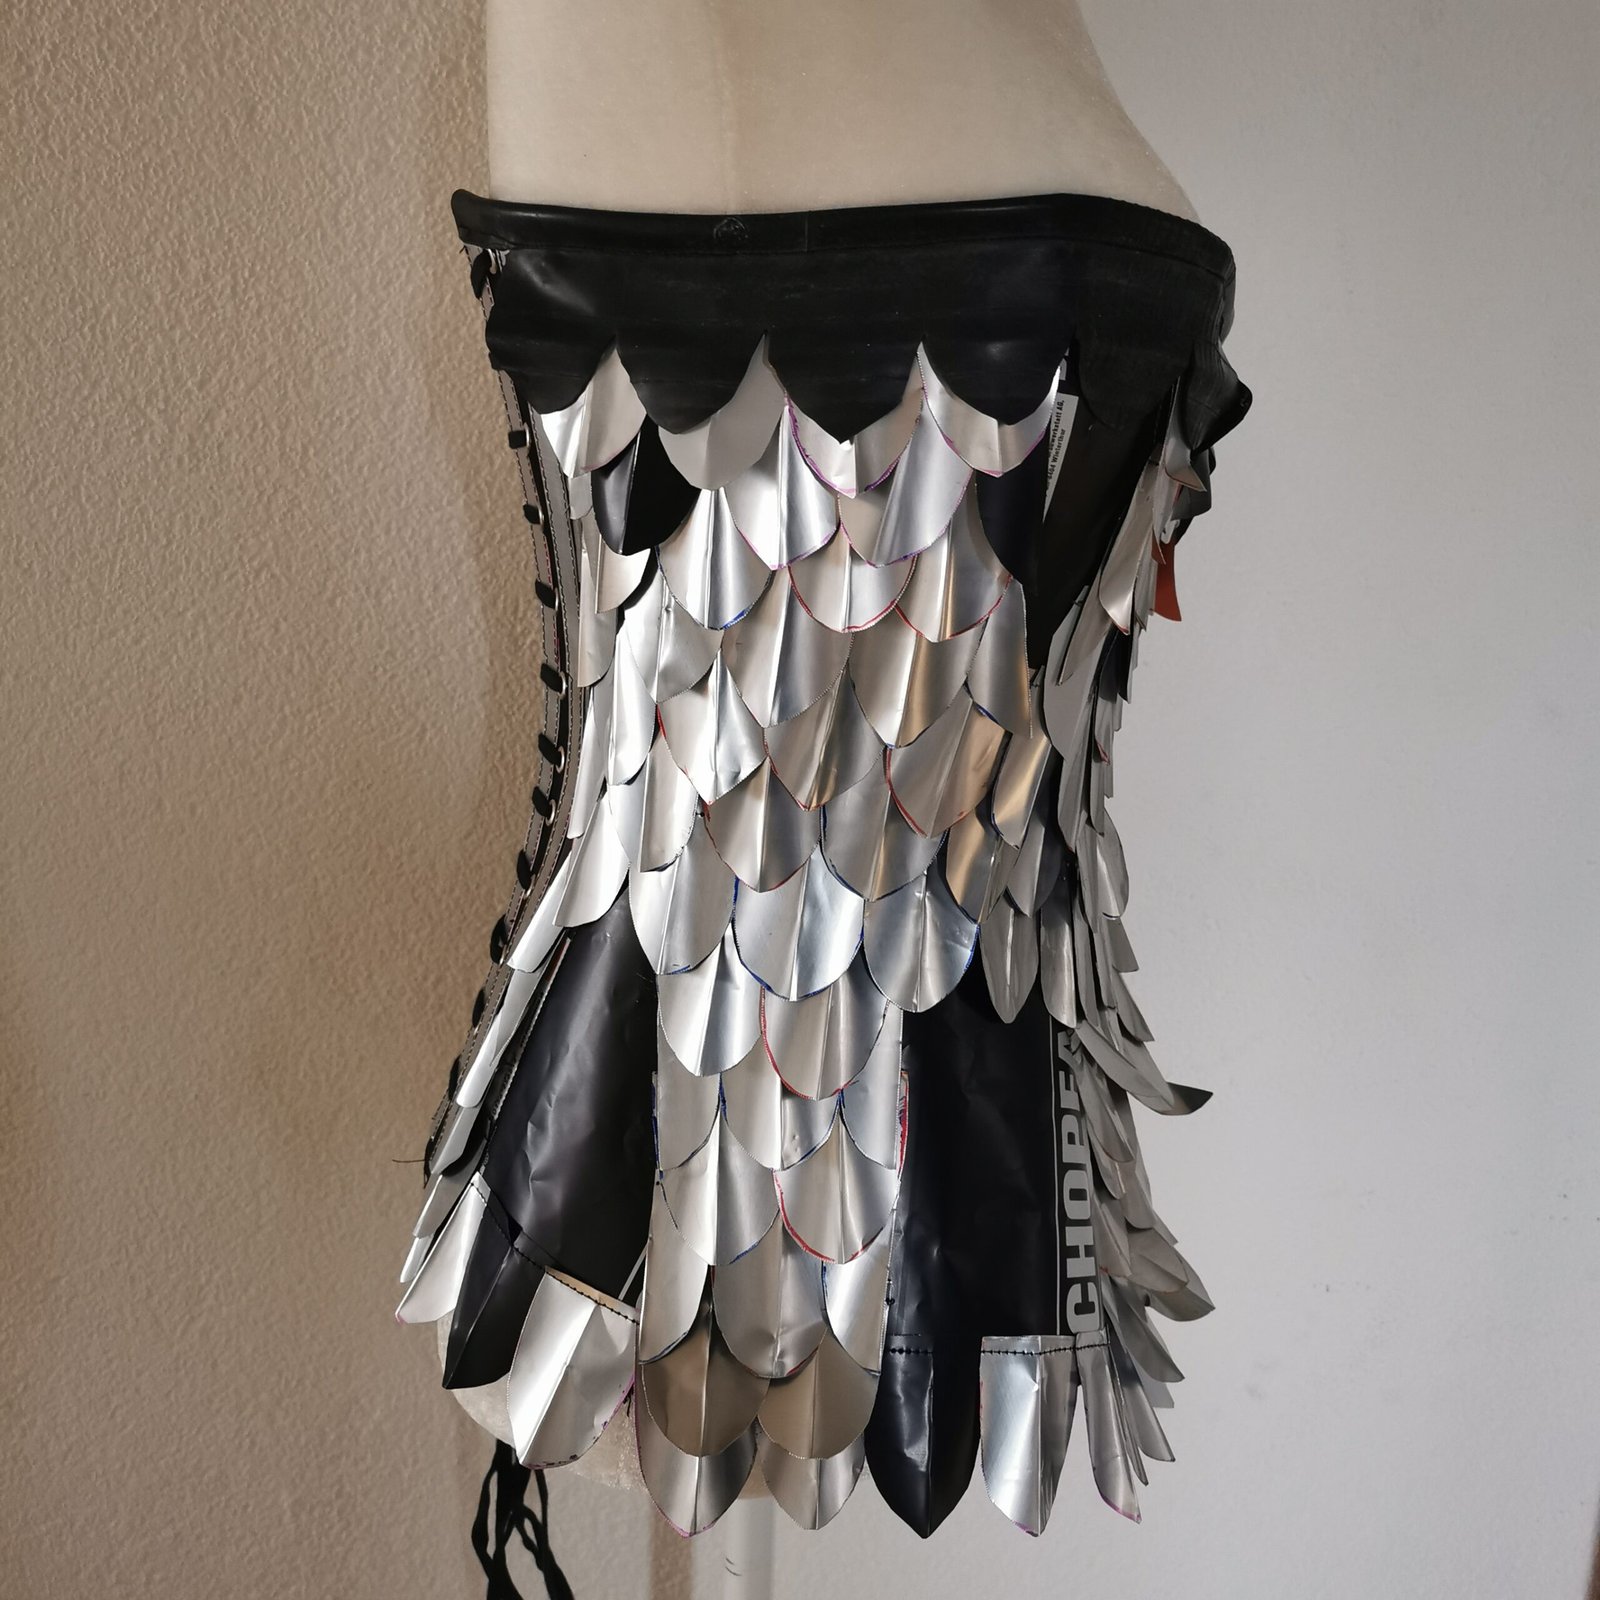 Aluminium corset right side